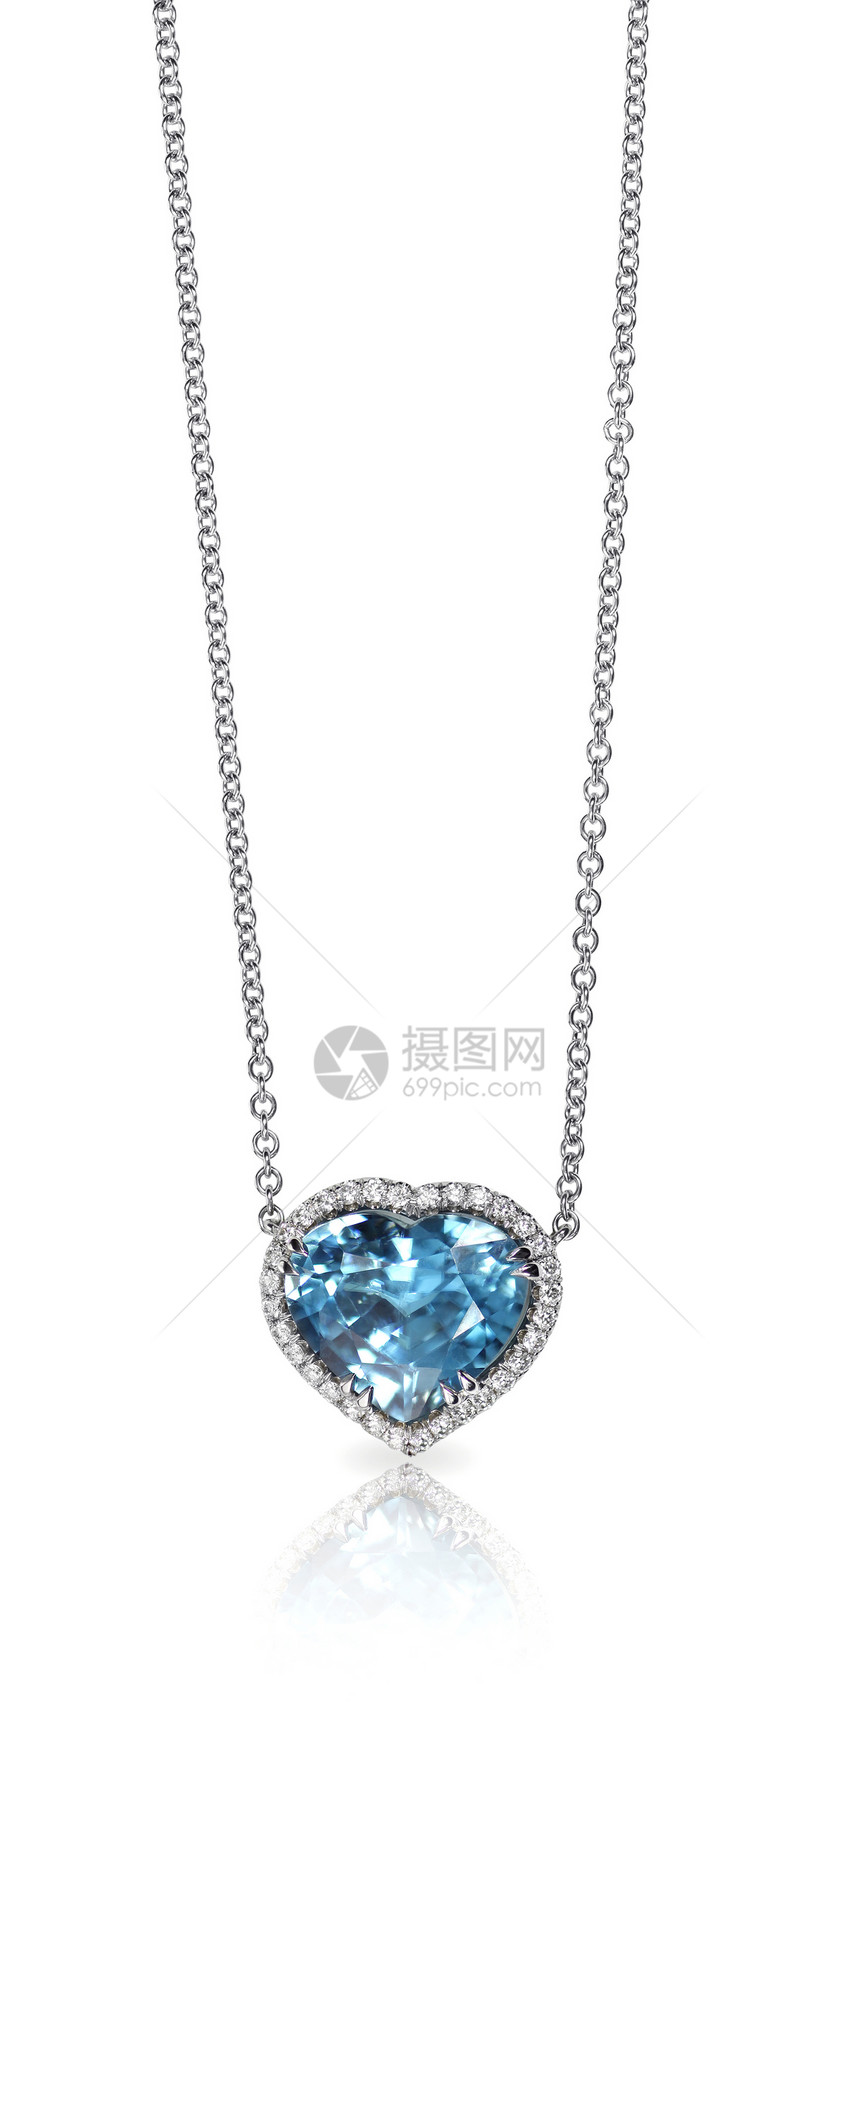 蓝宝石和钻石佩登特内克蕾反射婚礼珠宝稀有性宝石金属石头金子配饰礼物图片